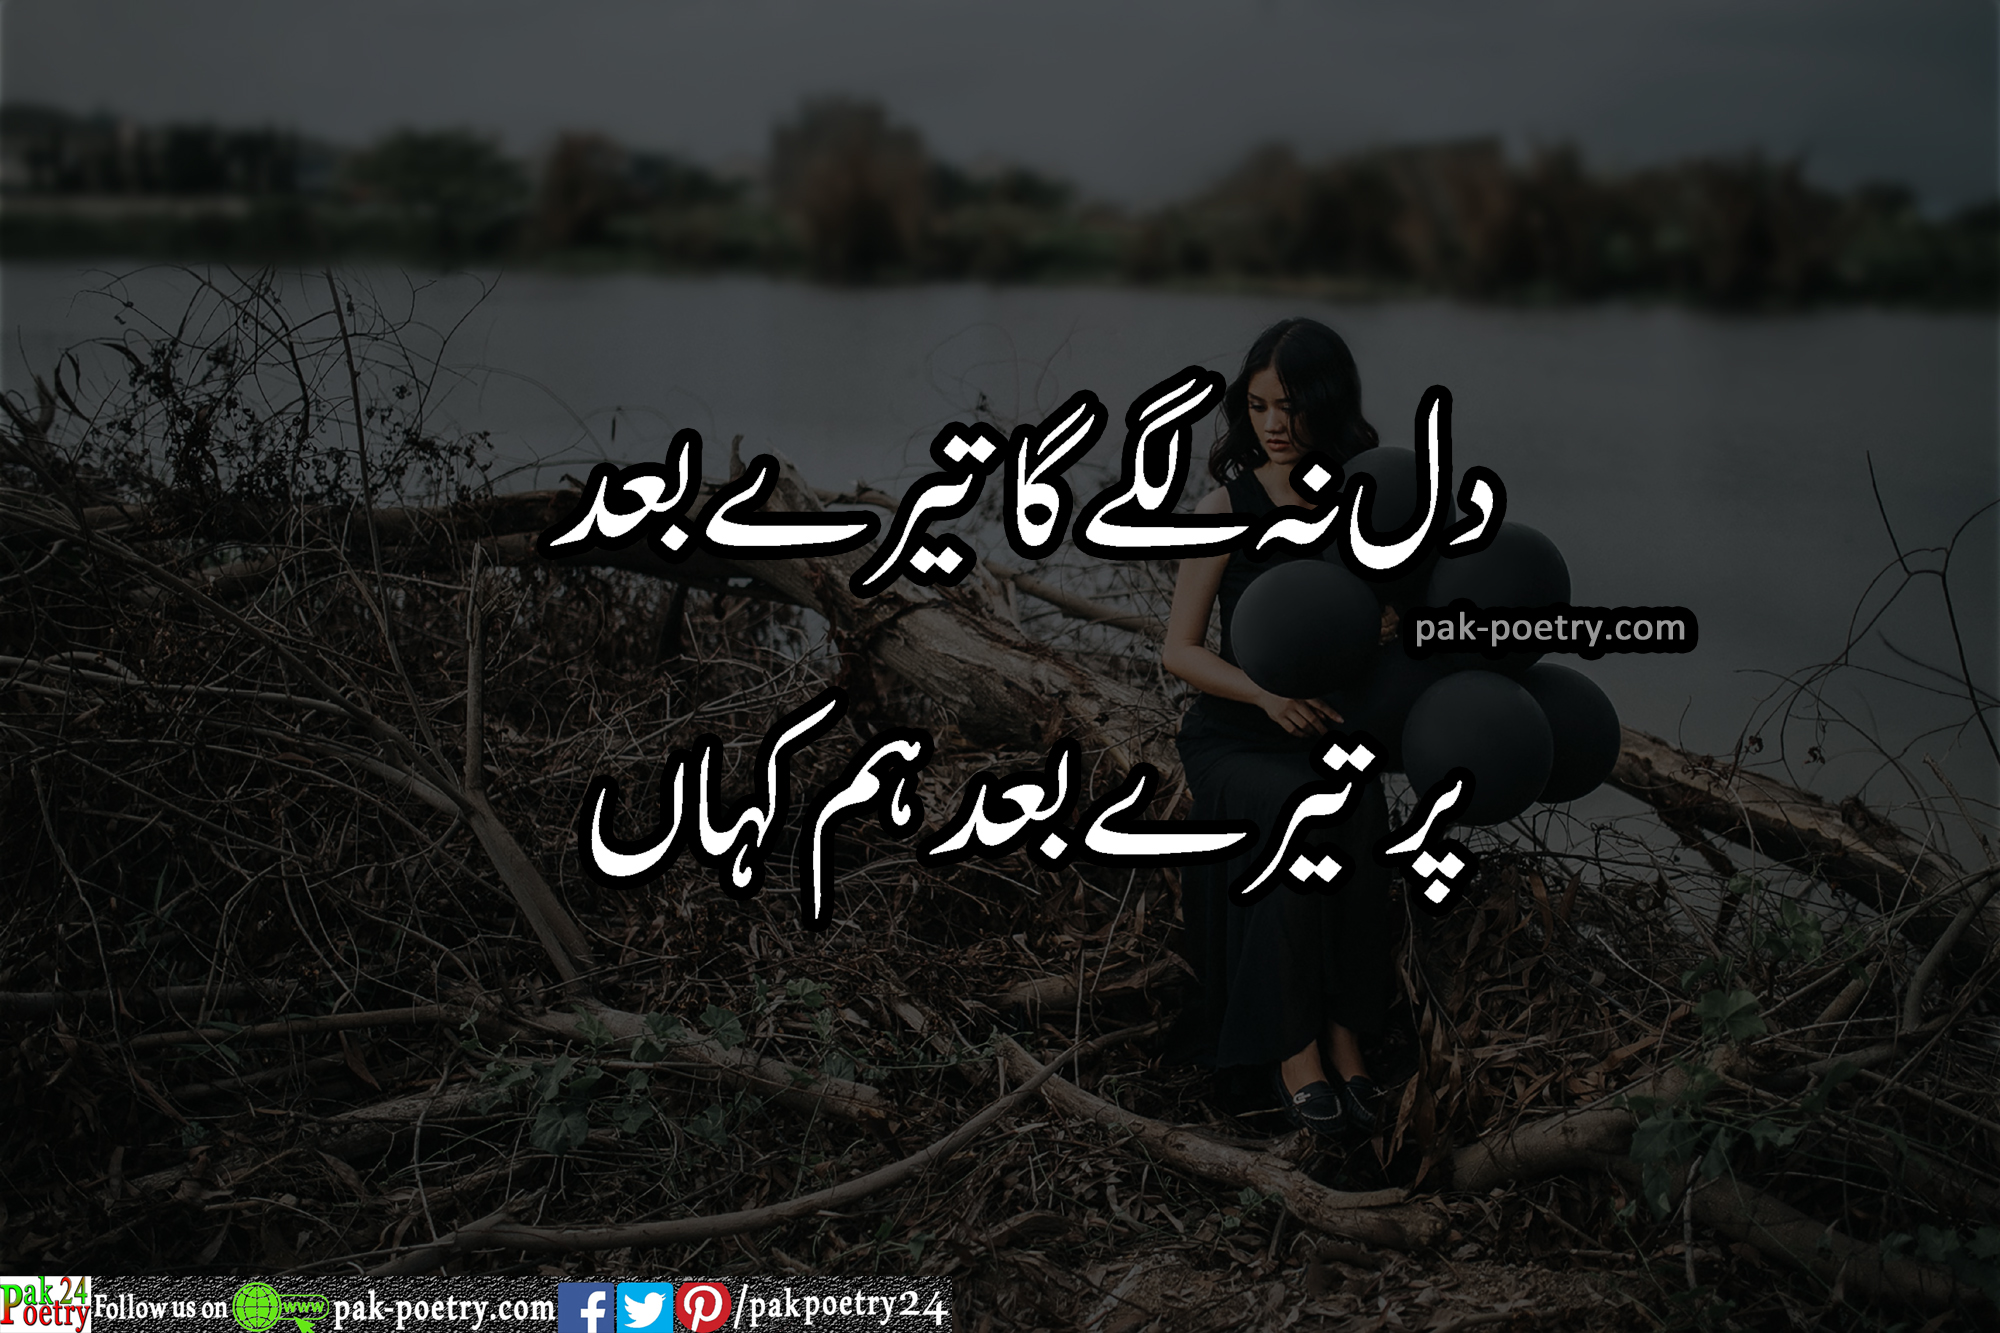 urdu sad poetry -  dill na lgey ga tery baad